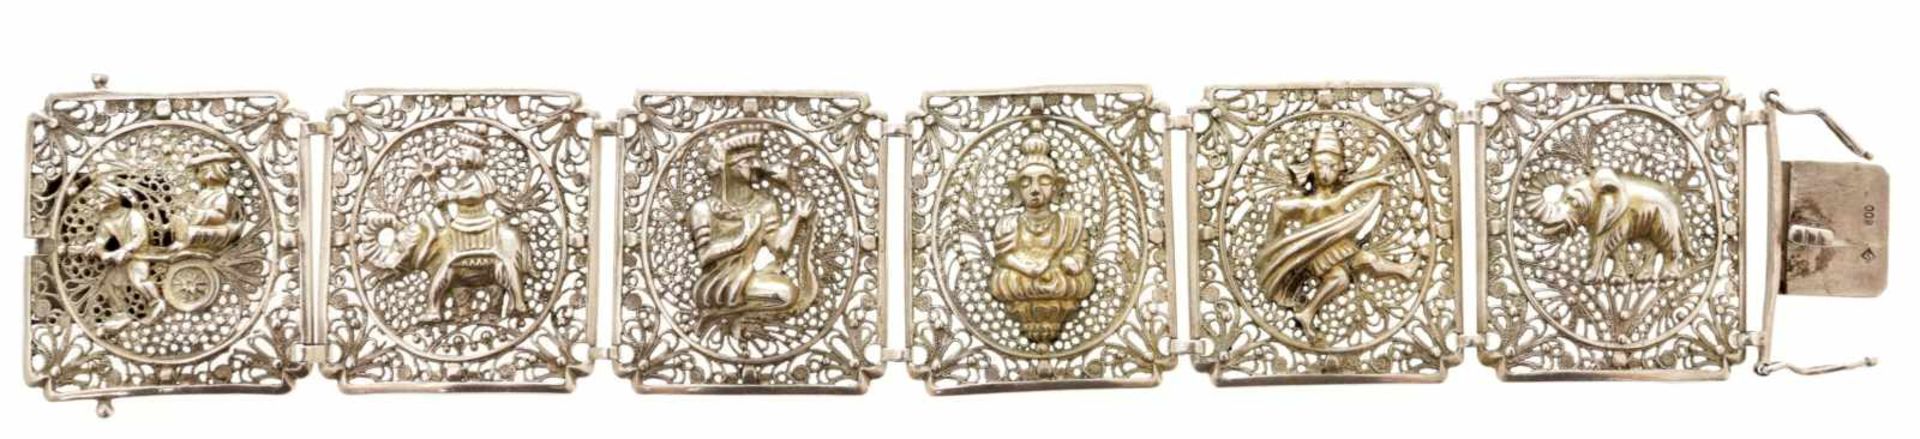 Armband800er Silber, Indonesien, 20.Jh. Gliederarmband in Filigransilber m. hinduistischen